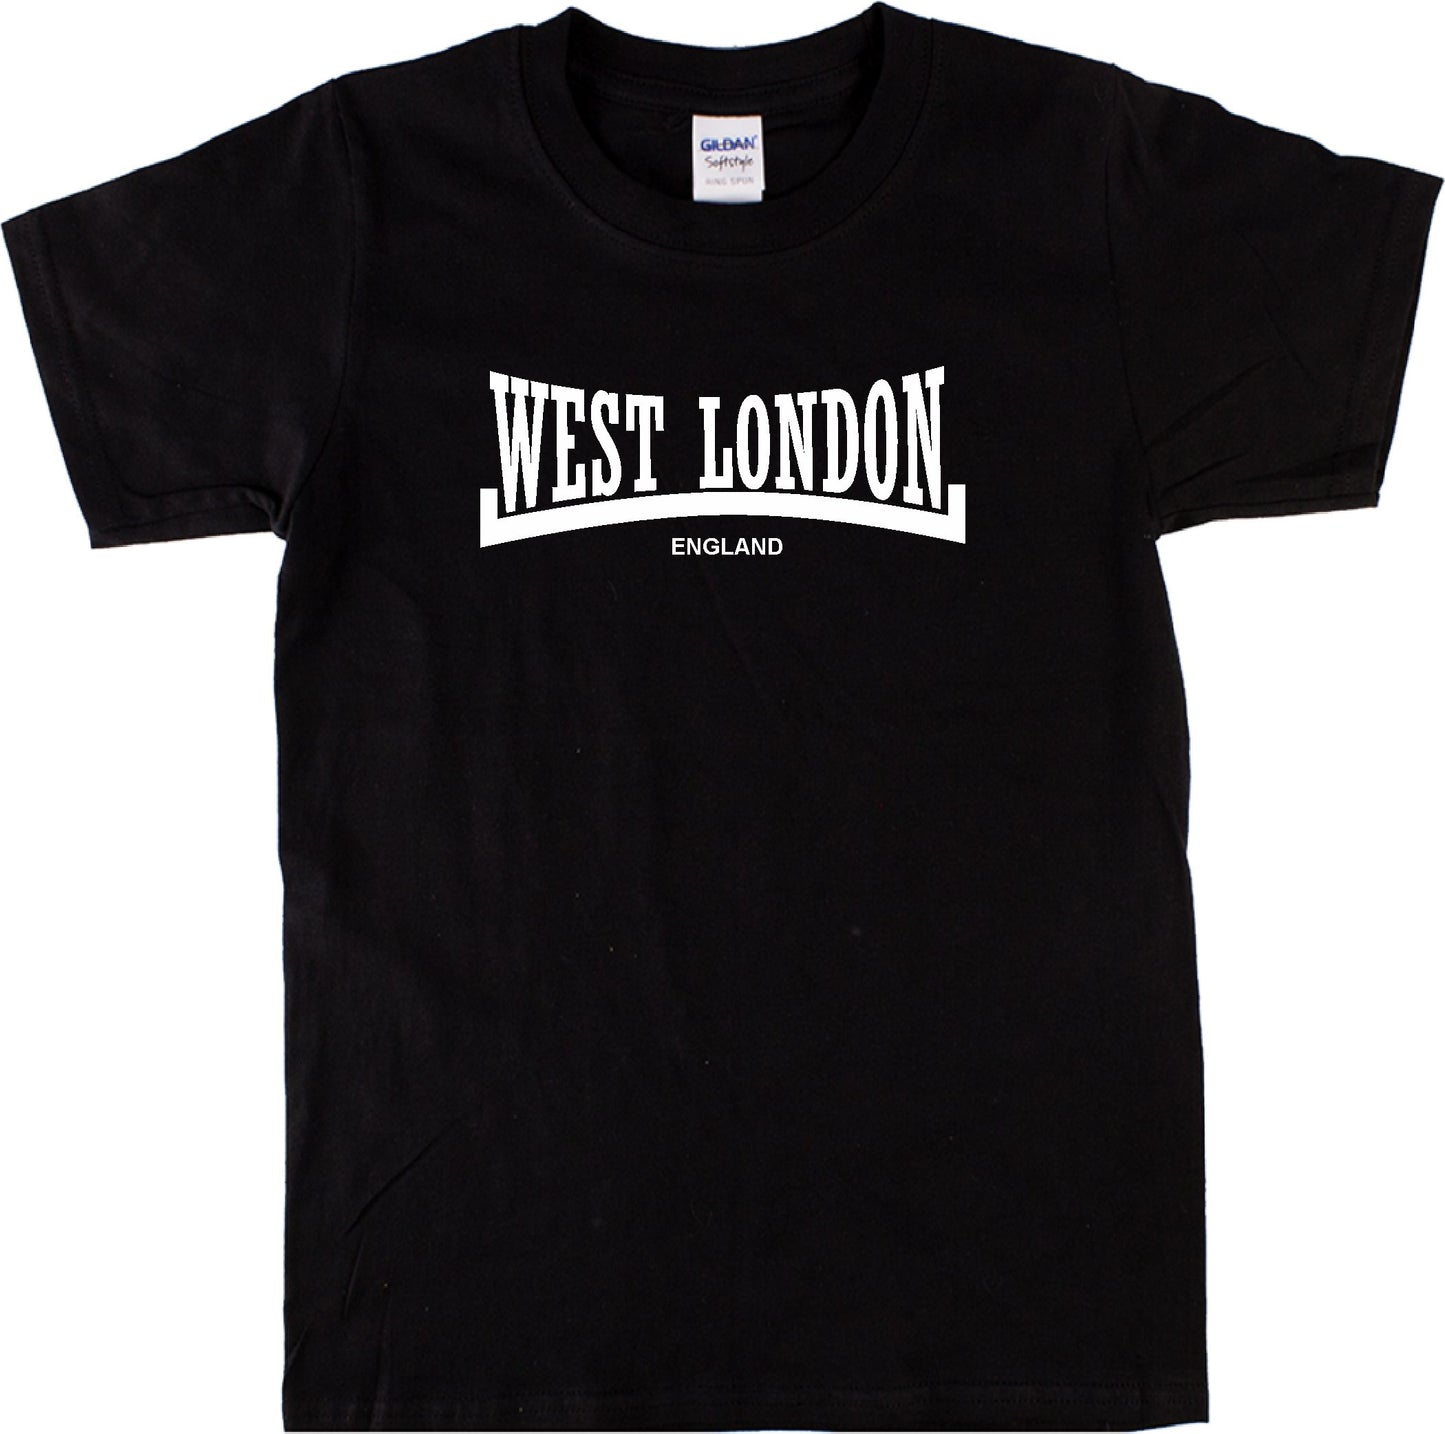 West London T-Shirt - London Souvenir, Custom Print Available, Various Colours